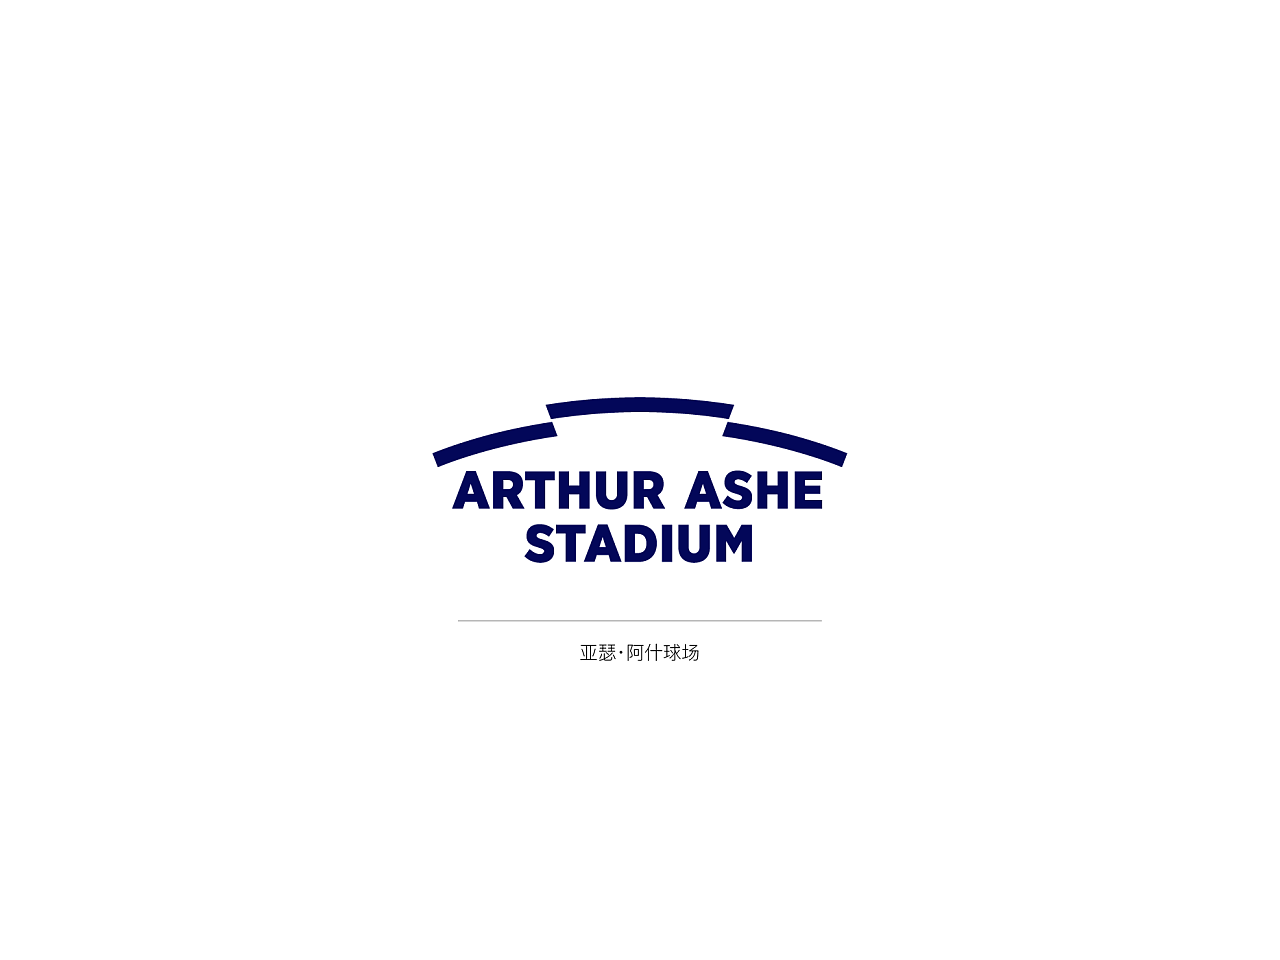 亚瑟·阿什球场是目前世界上最大的室外网球场，位于美国纽约市皇后区。该体育场以1968年首届美国公开赛冠军亚瑟·阿什的名字命名。